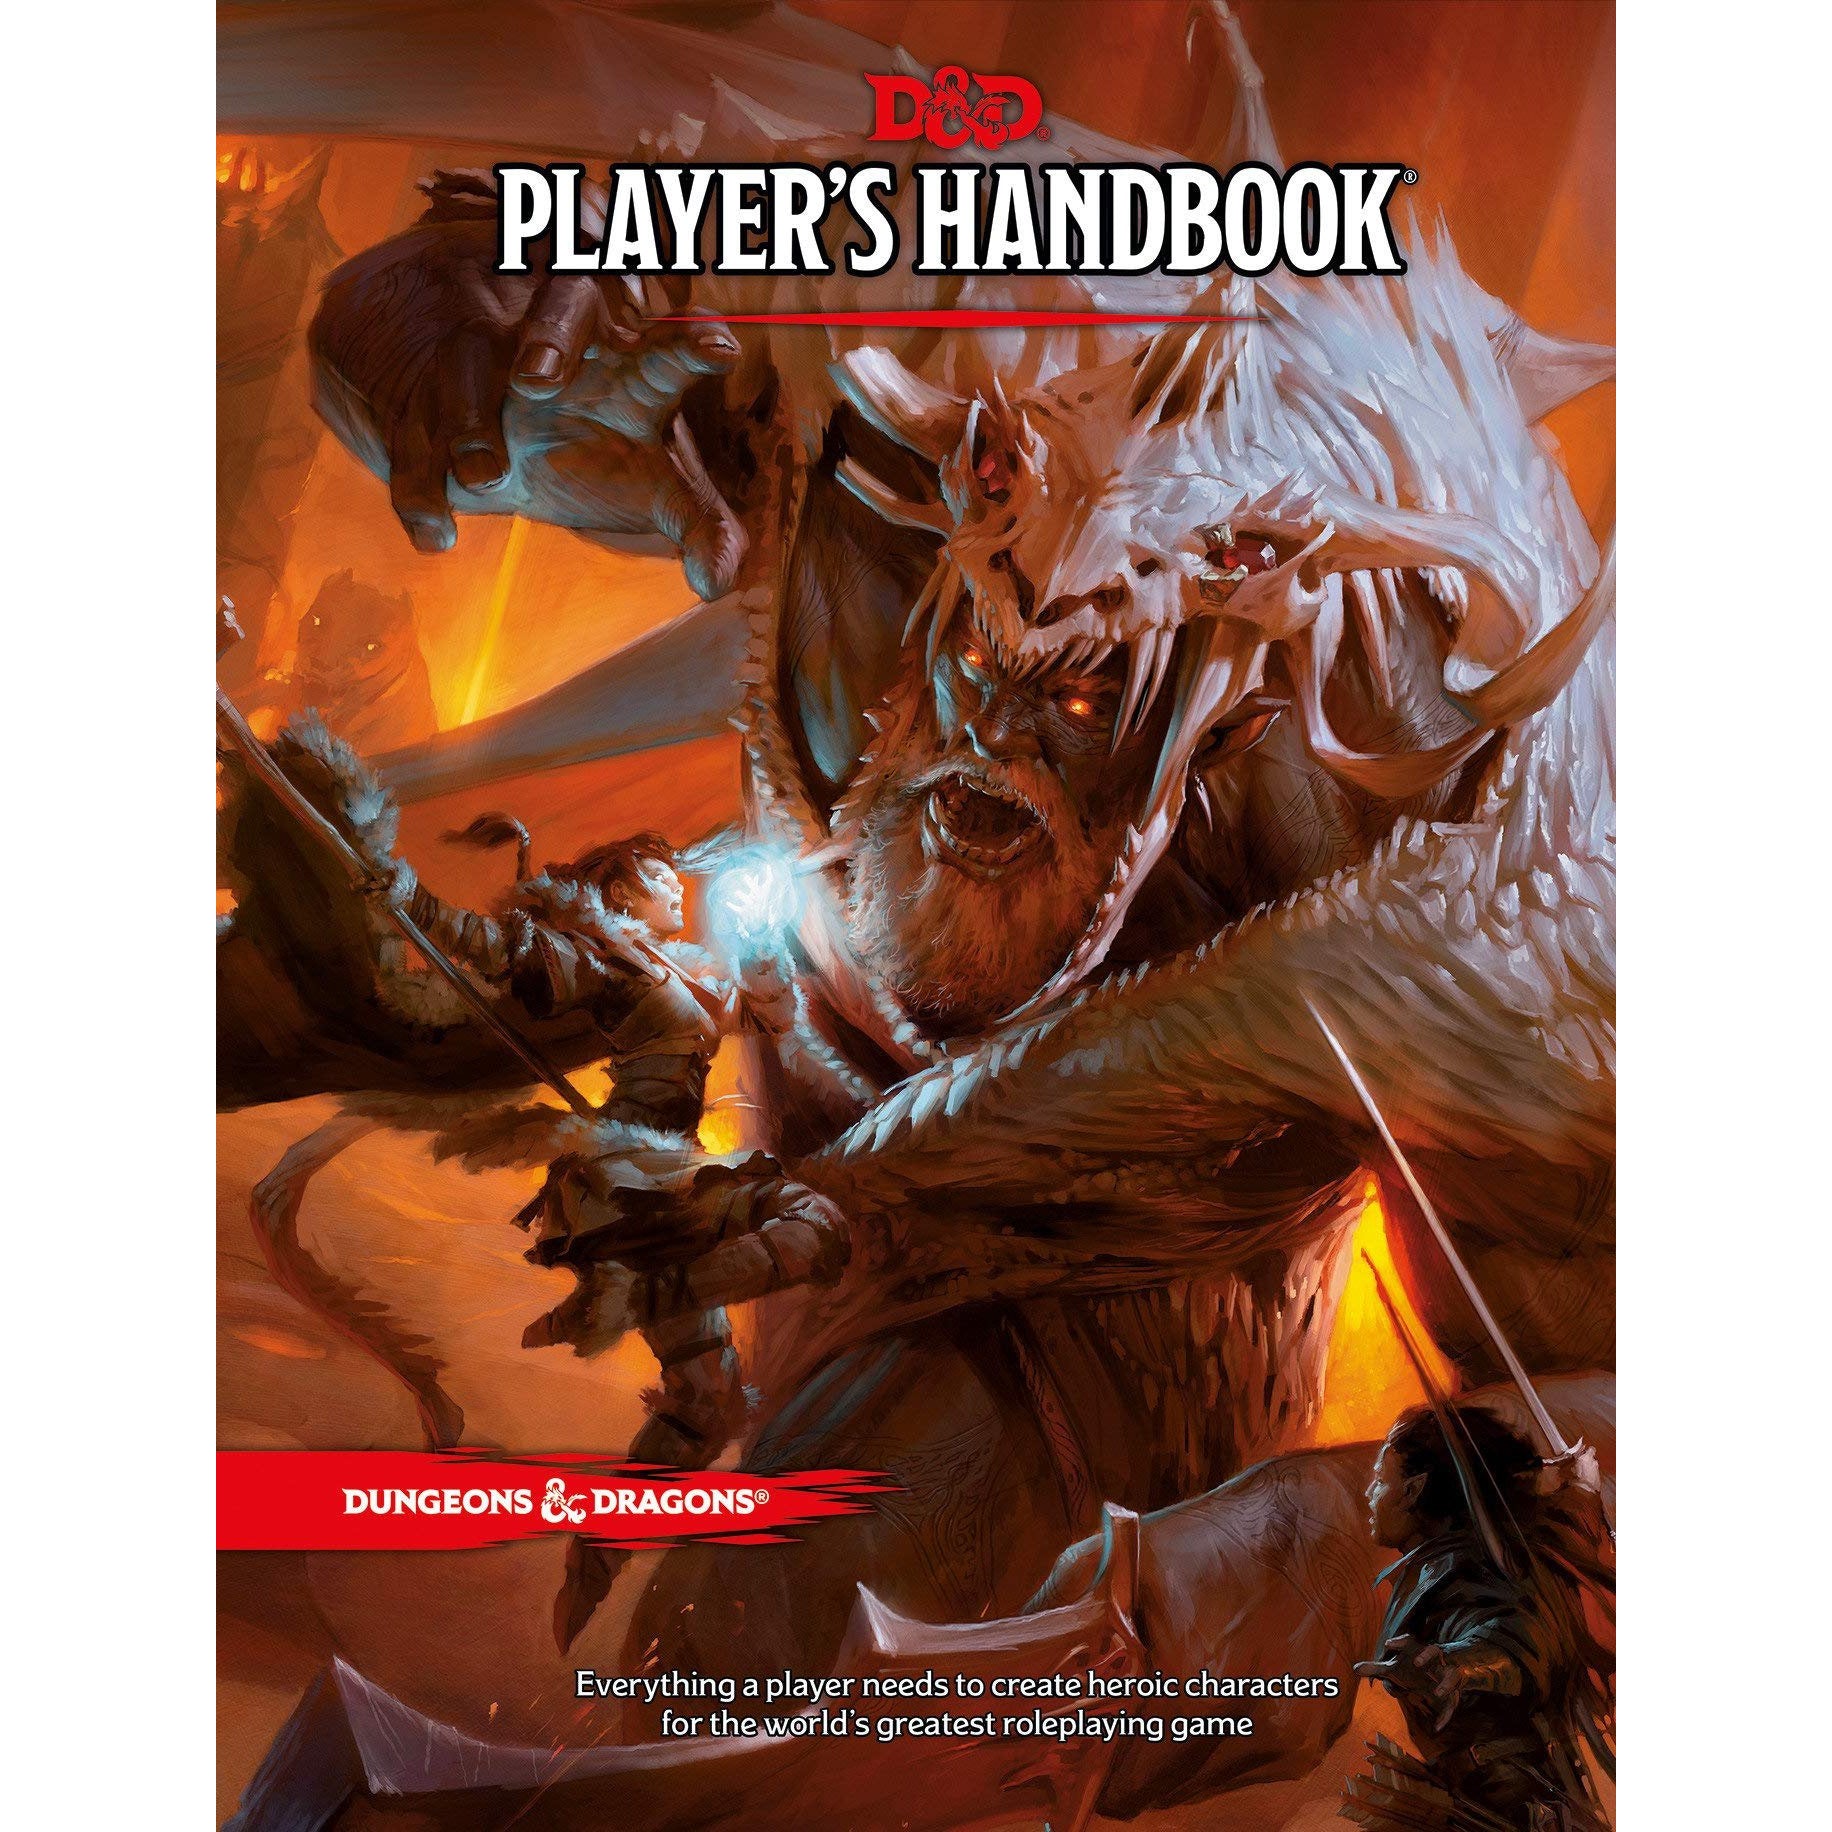 D&D Player's Handbook Hardcover Manual